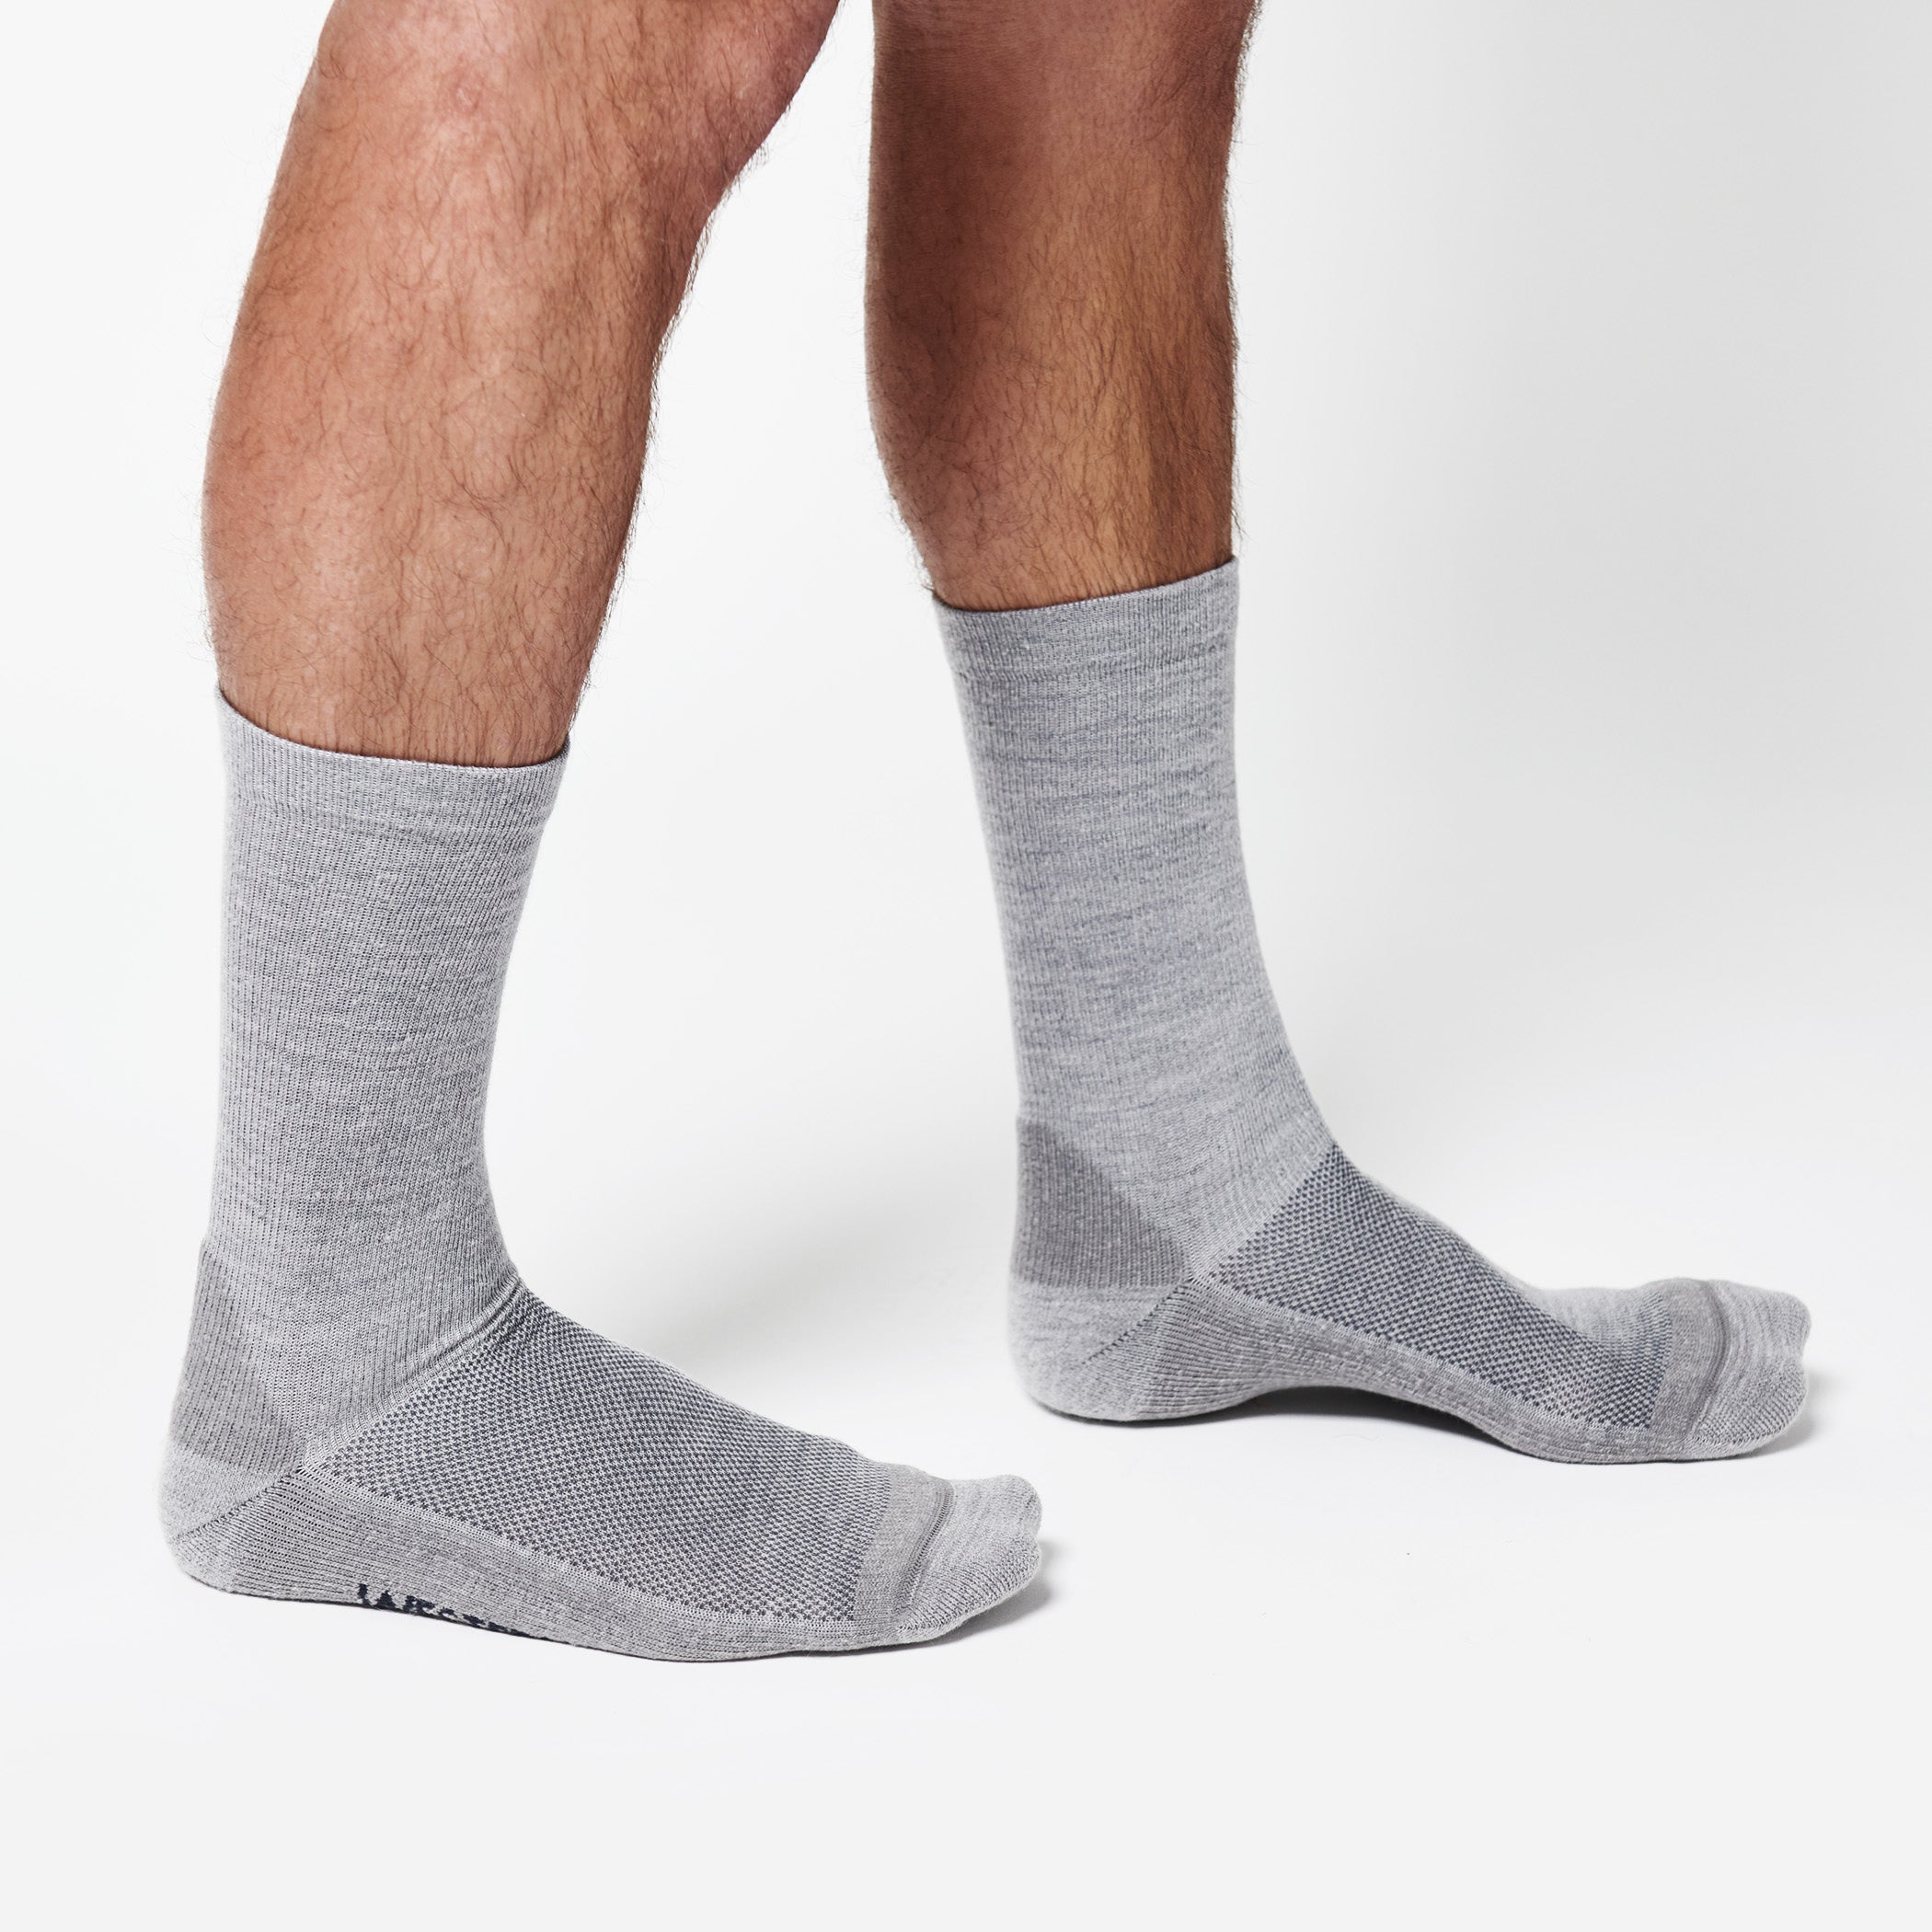 StrongCore Merino Socks - Grey
